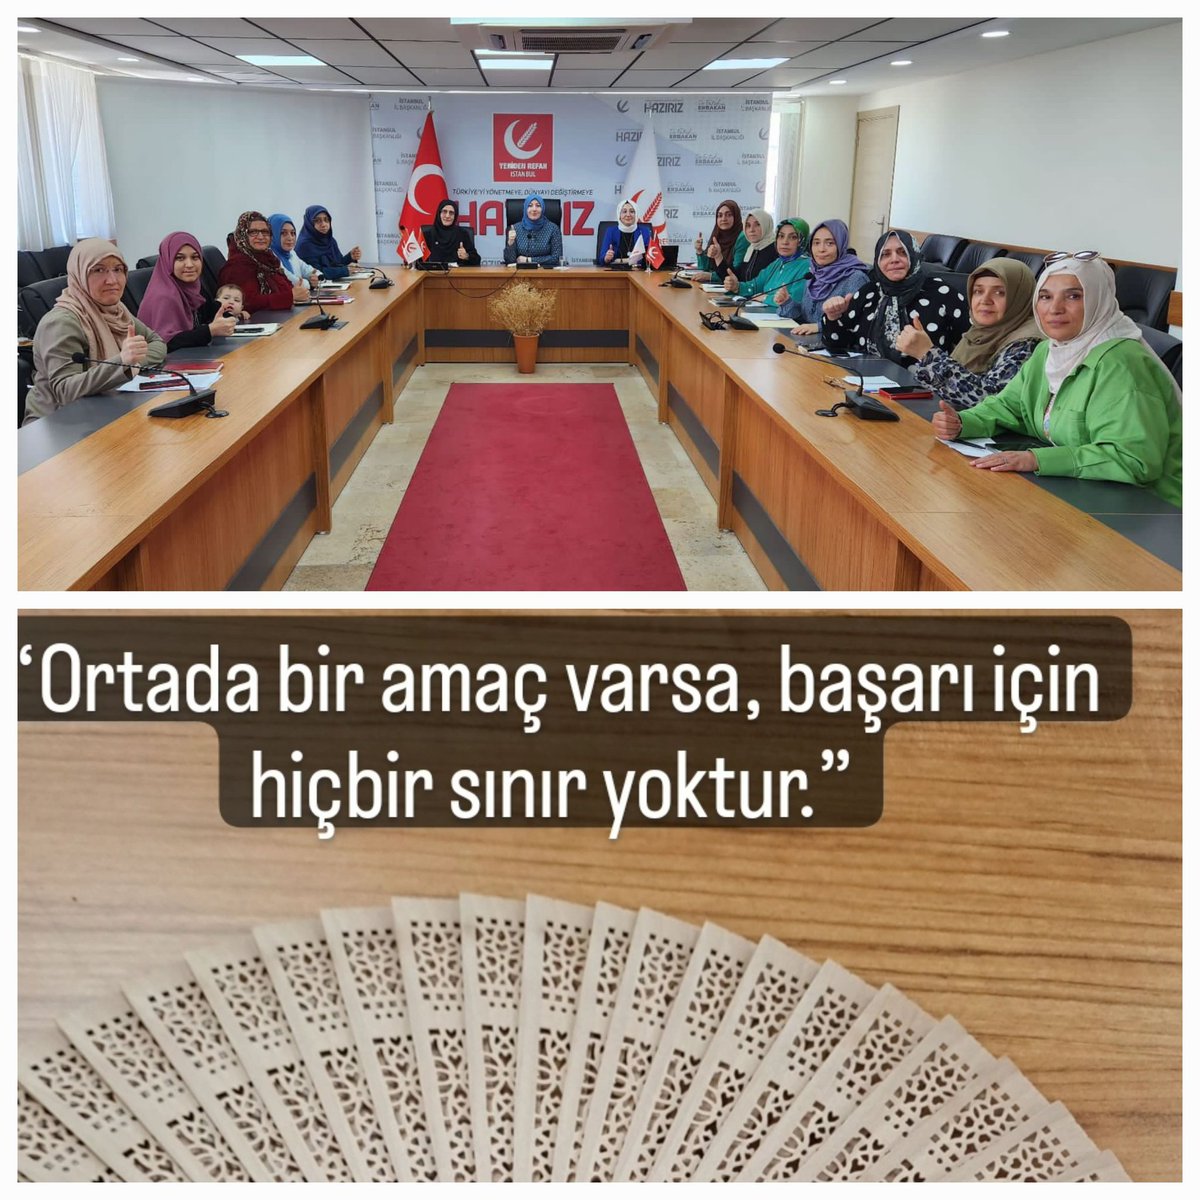 Haftalık toplantımızı İl Kadın Kolları Başkanımız Setenay KANAR hanımefendinin riyasetinde gerçekleştirdik.

Alınan kararlar hayırlara vesile olsun.

#İstanbulbizeemanet
#MilliGörüşMecliste